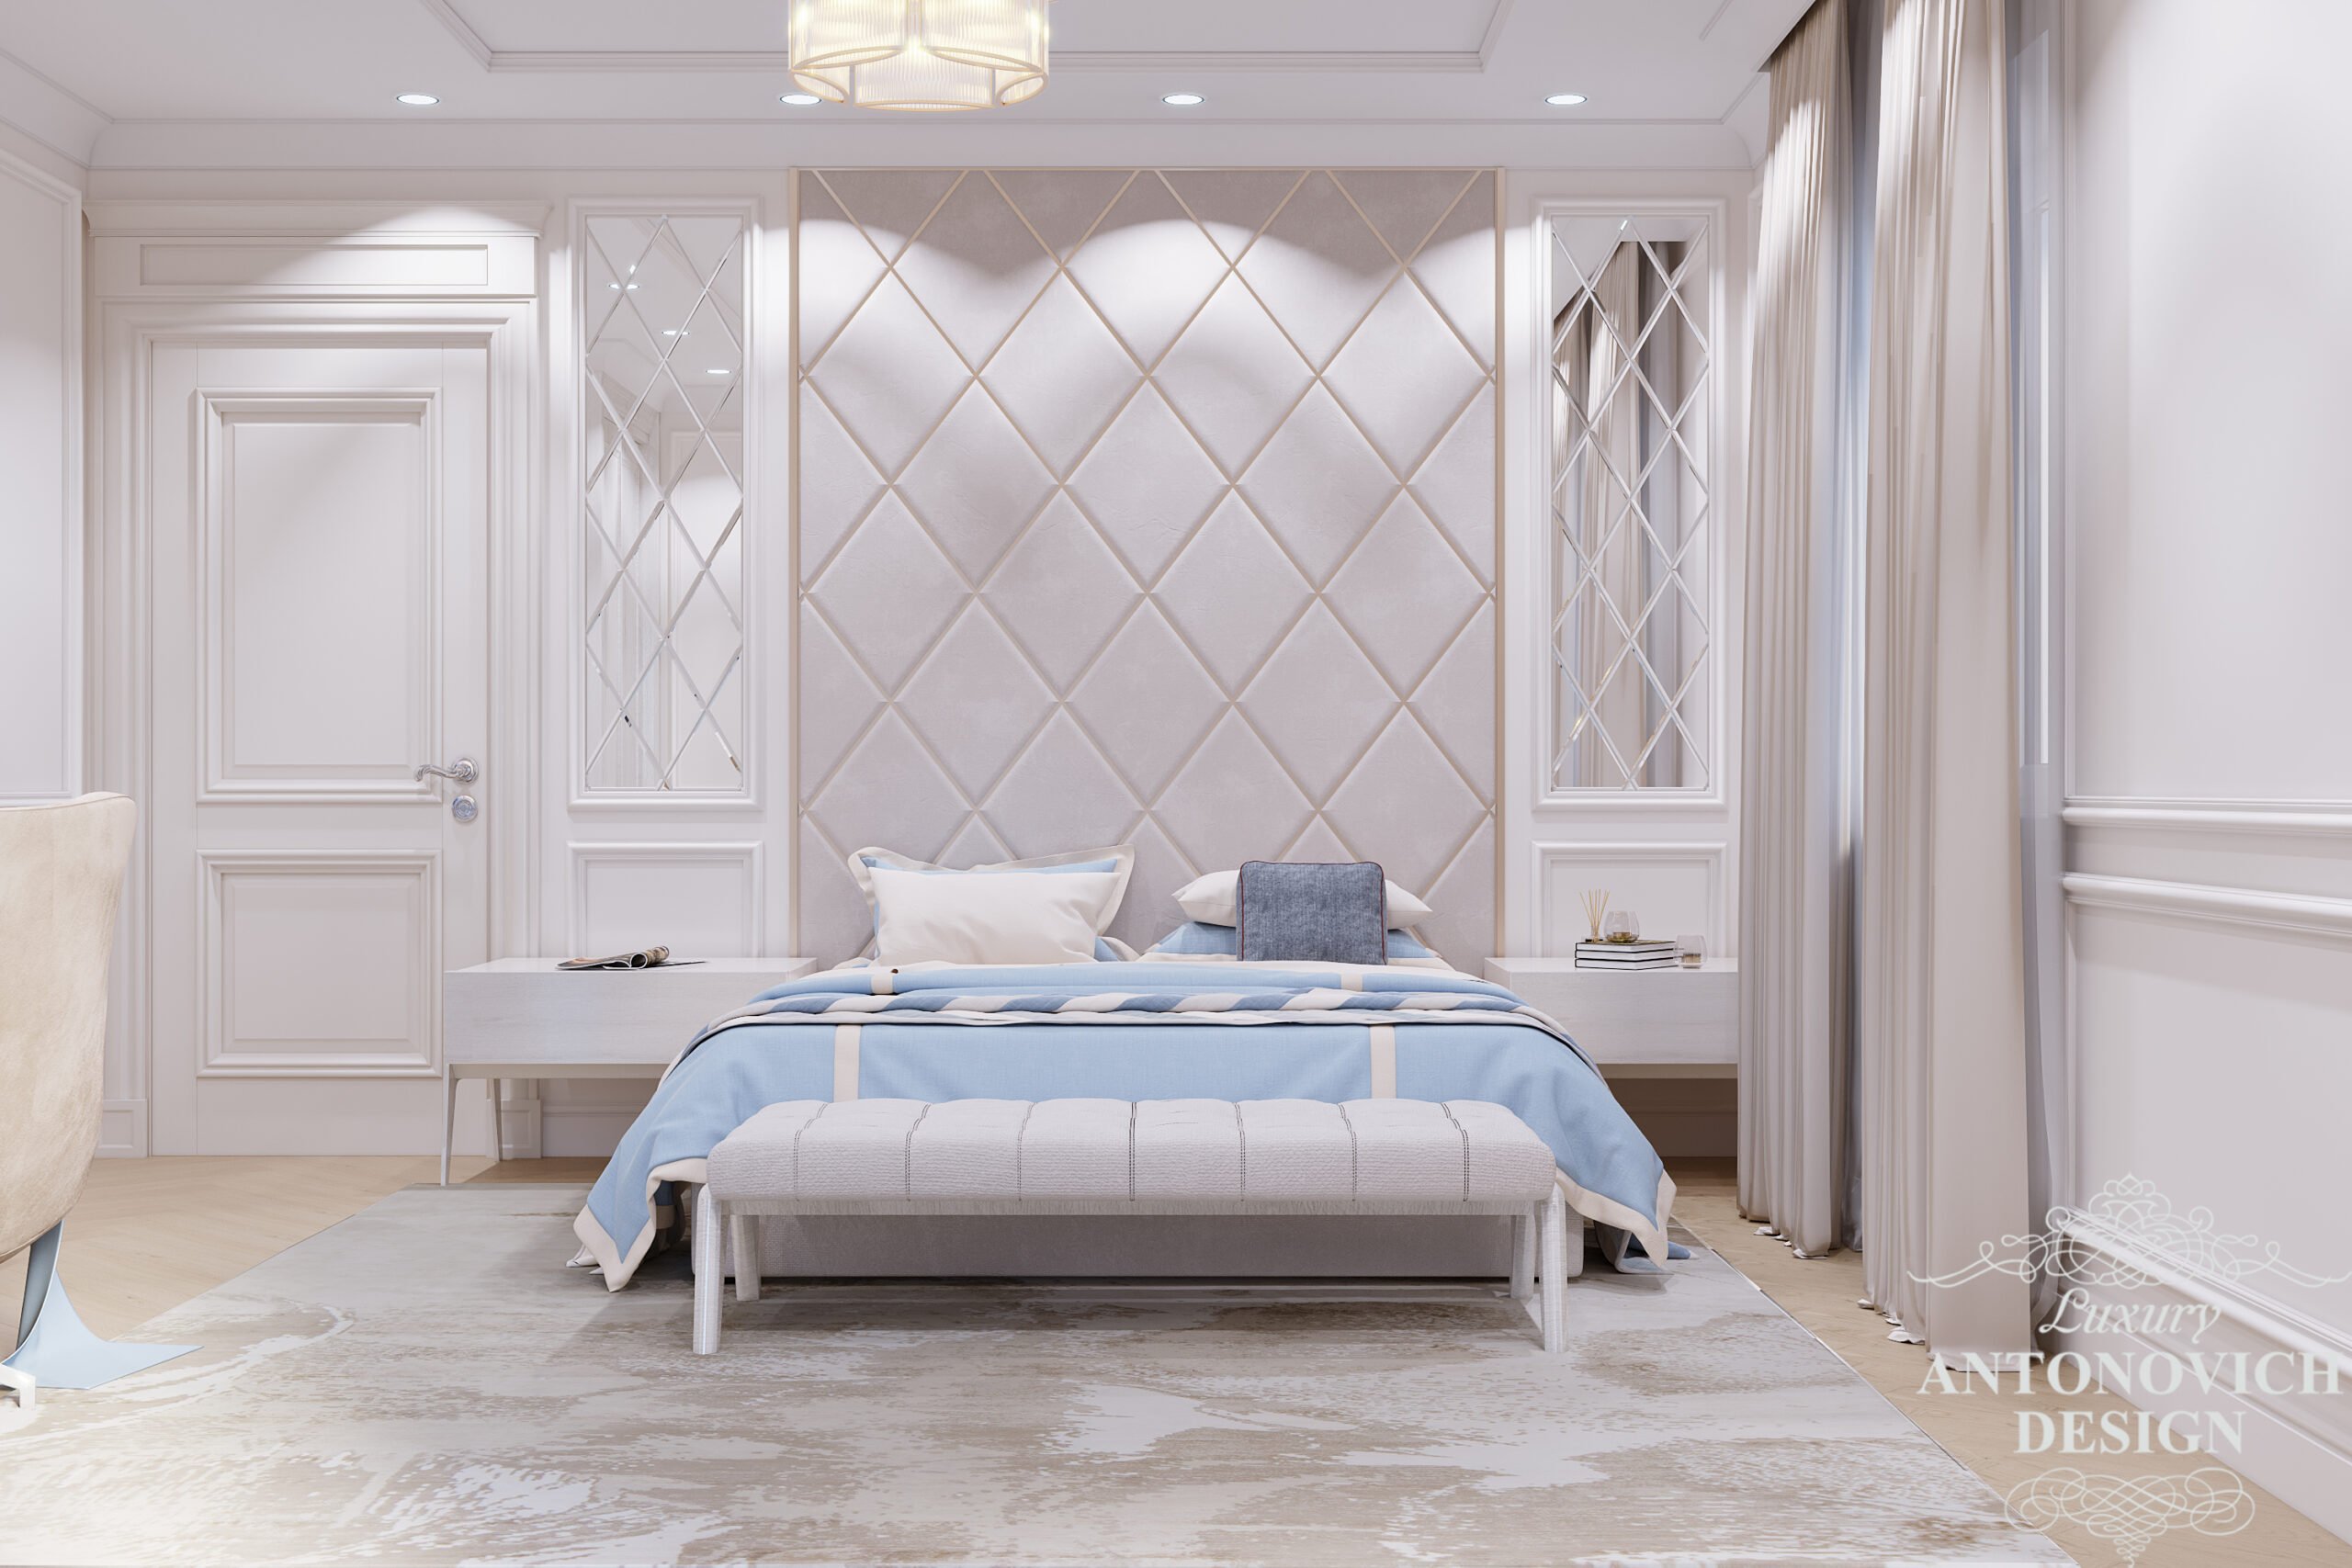 Мягкая стеновая панель с геометрическими вставками и зеркалами в авторском проекте спальни в частном доме